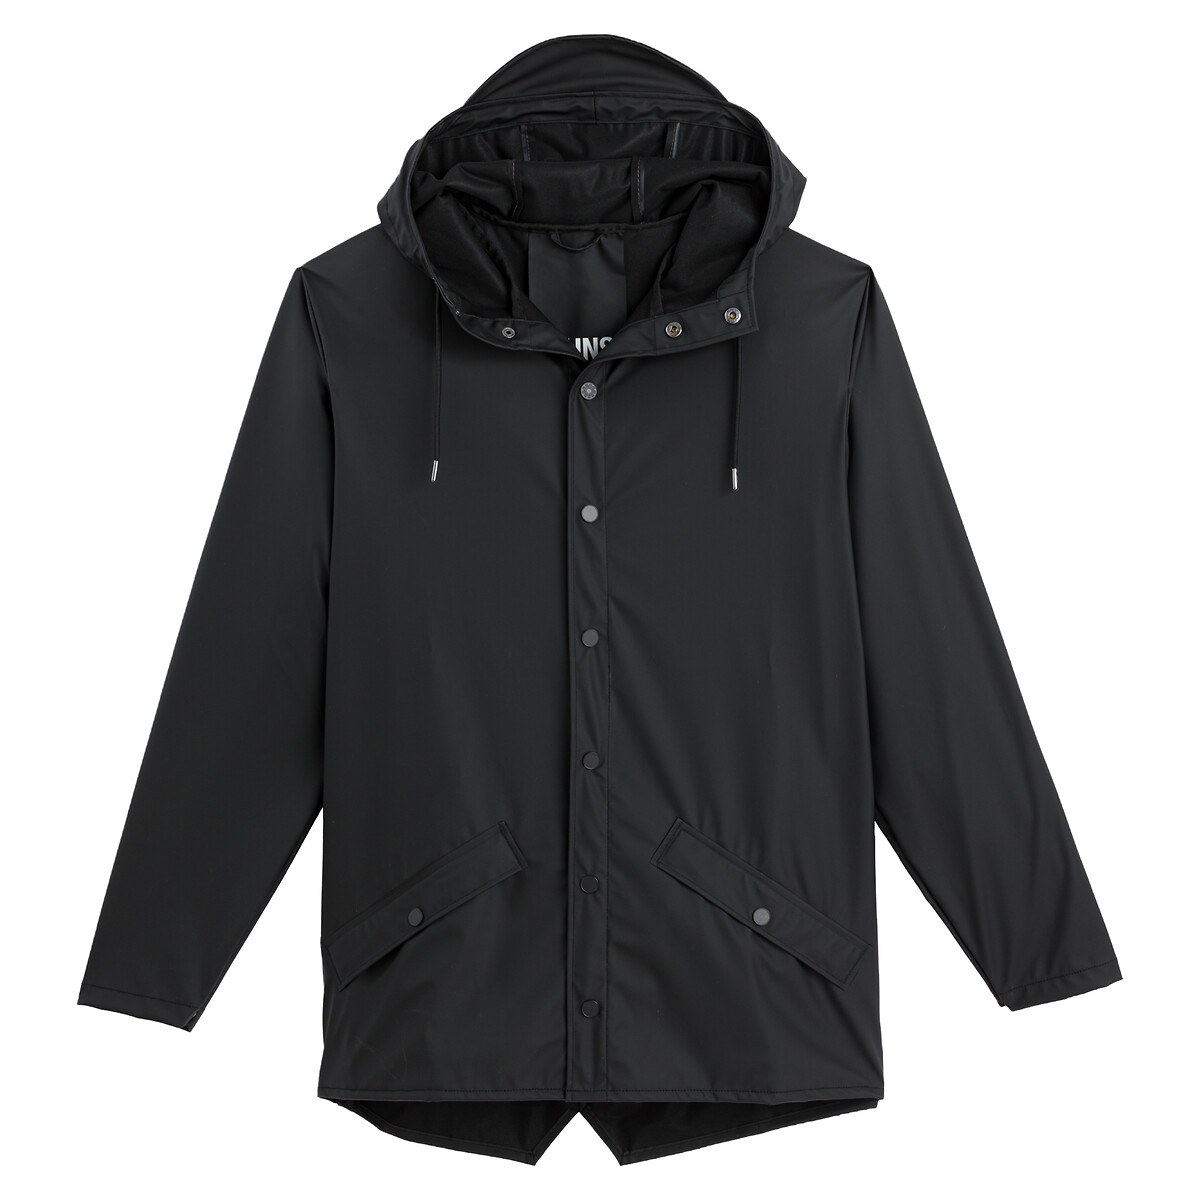 Unisex Waterproof Hooded Jacket with Zip Fastening